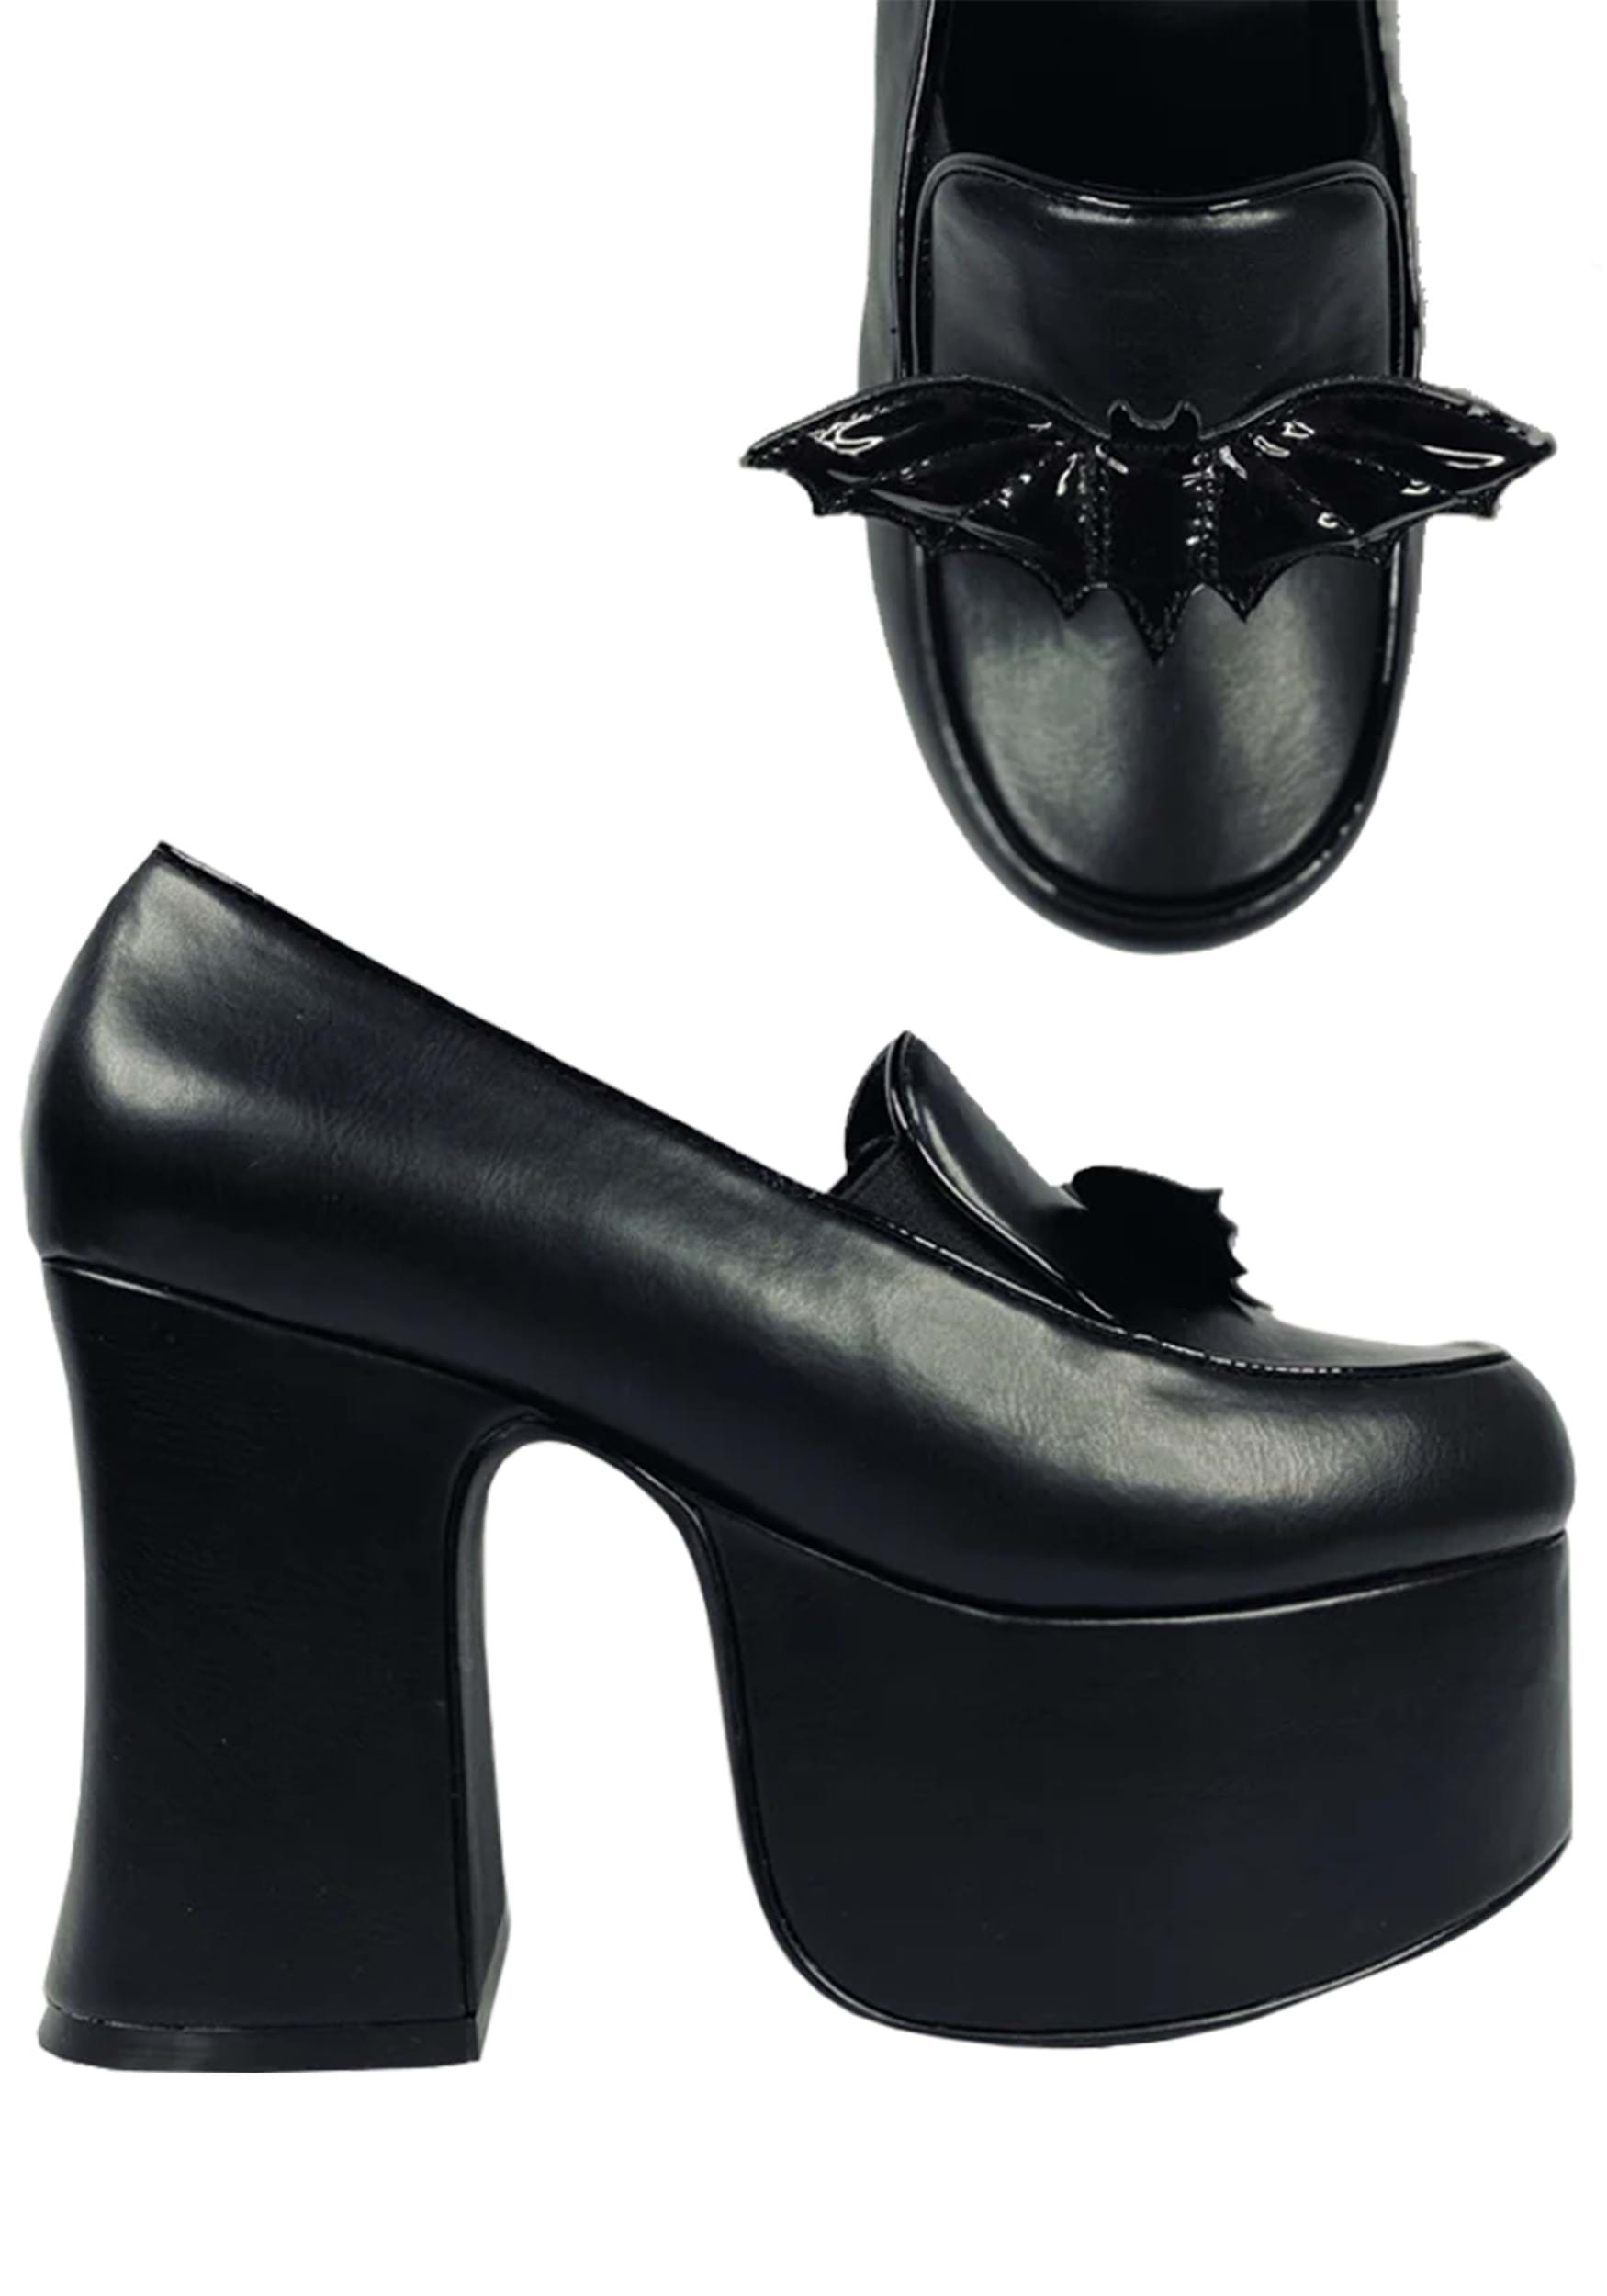 Image of Platform Bat Banshee Heels for Women ID SVBANSHEEHEEL-BAT-10